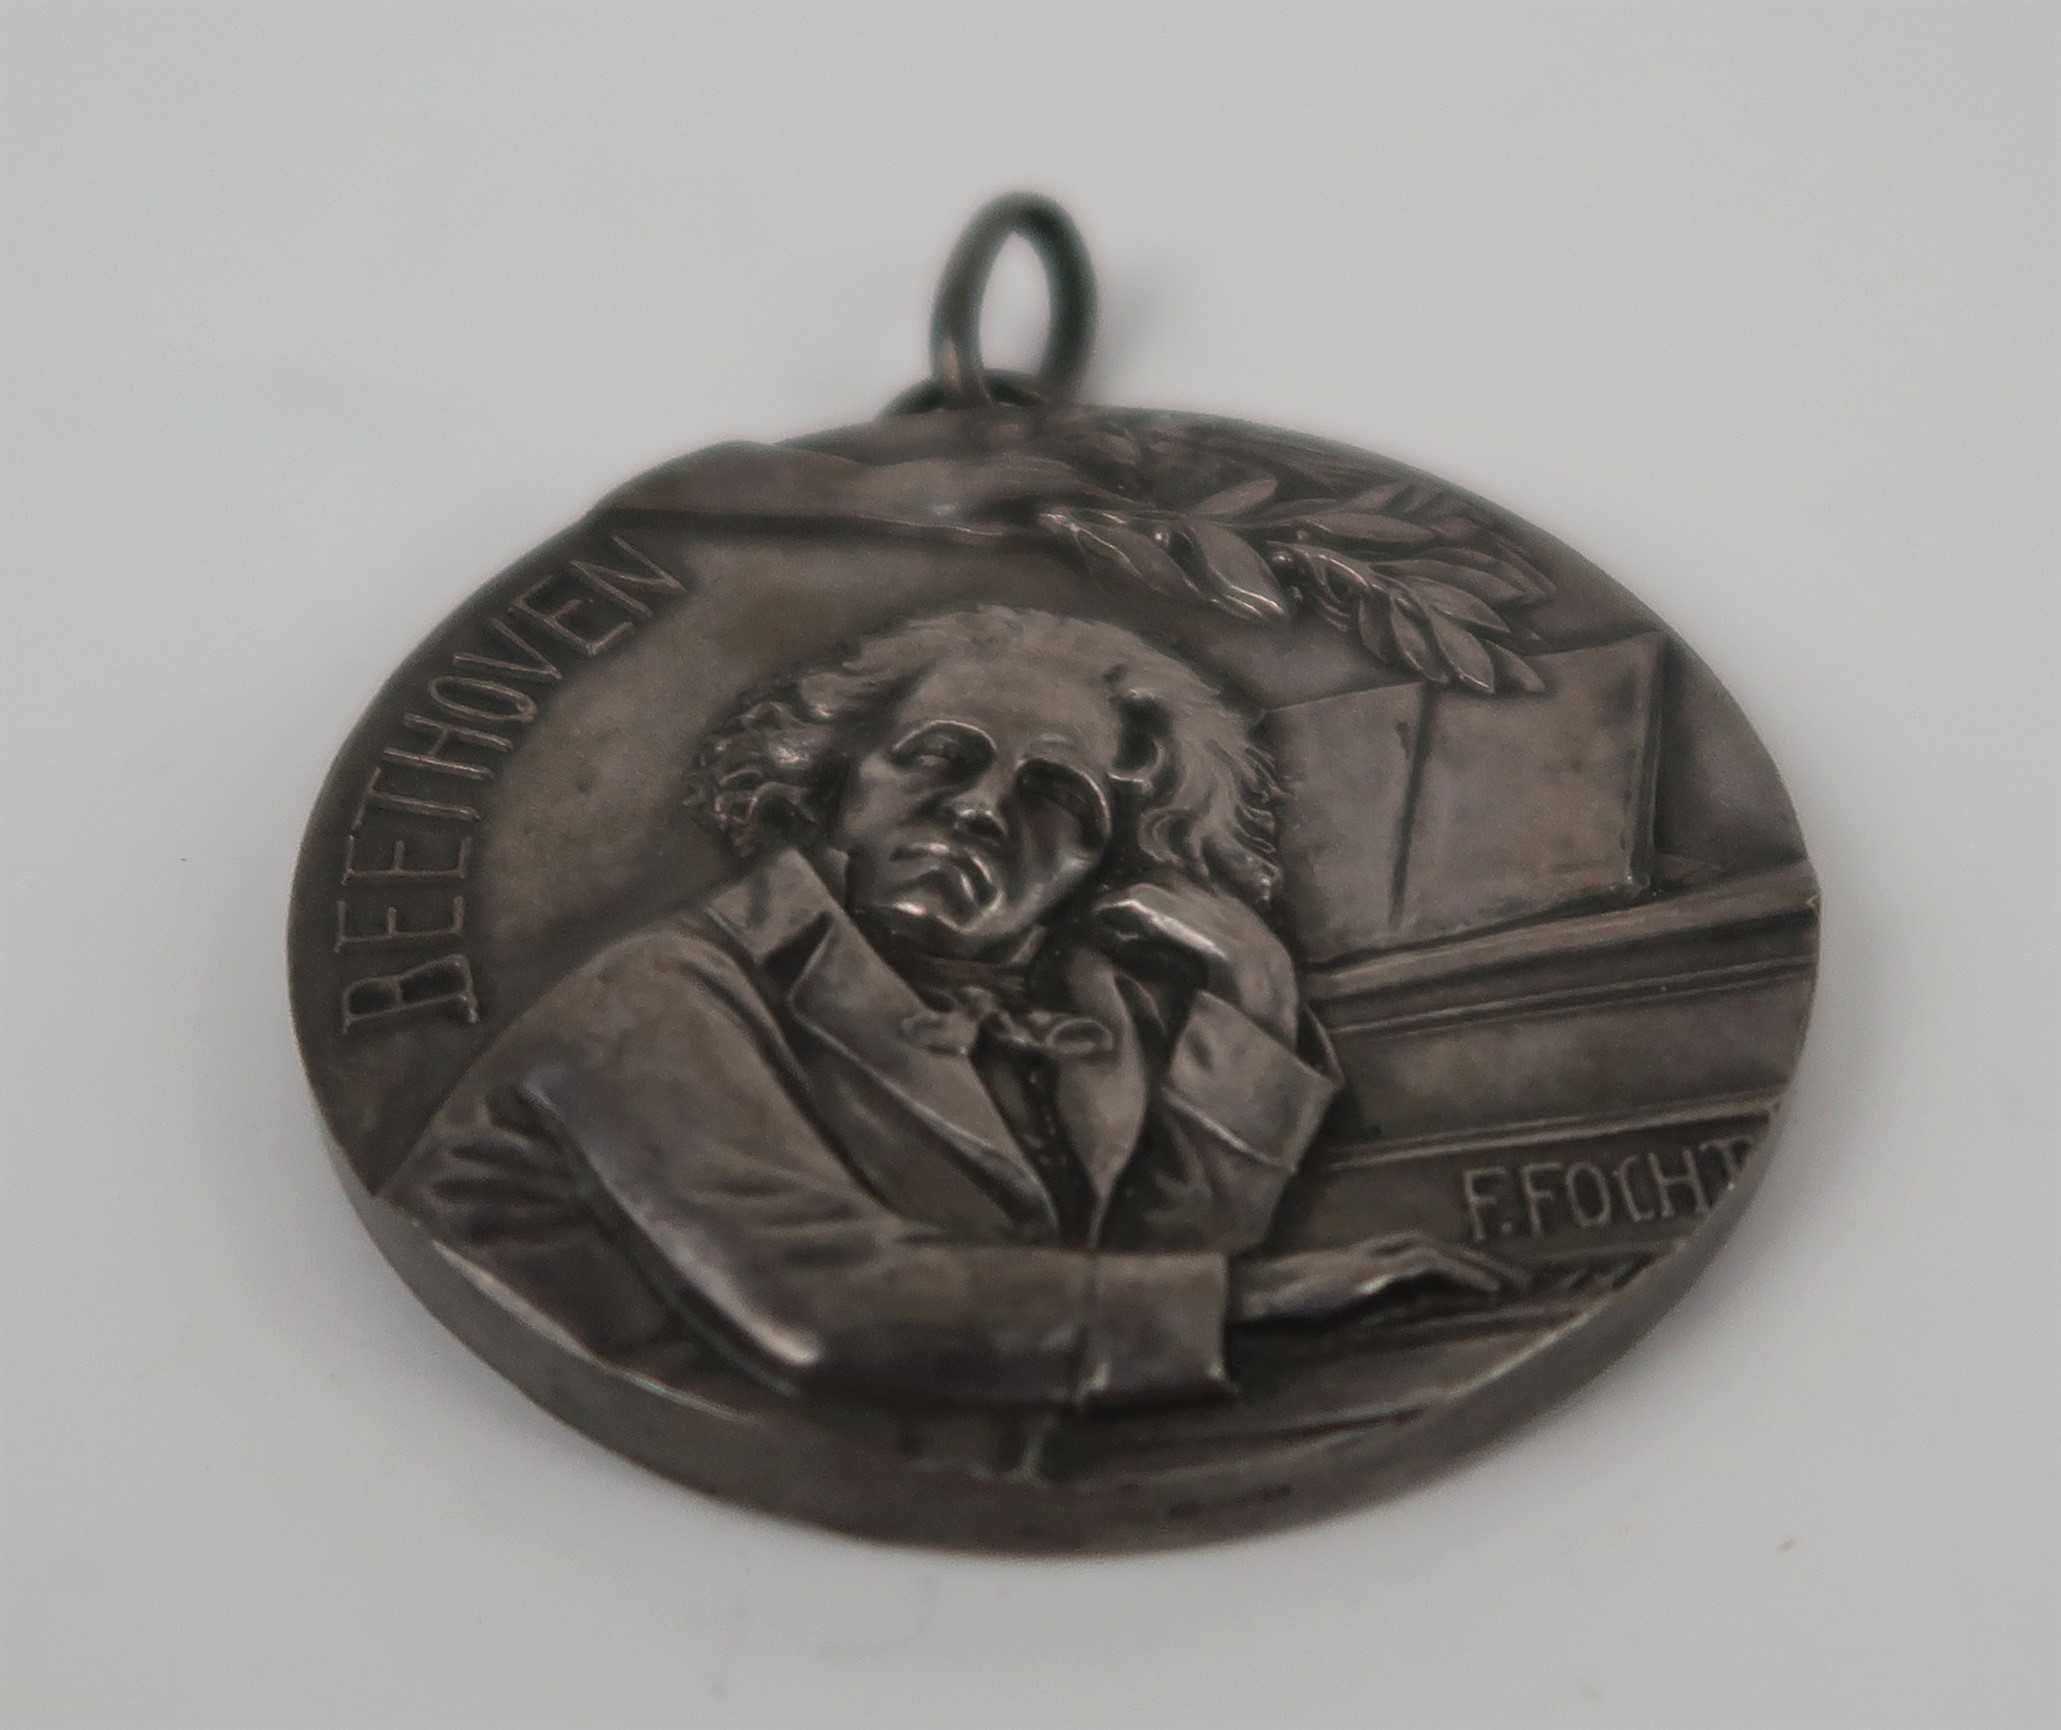 Medalha Beethoven por F. Focht